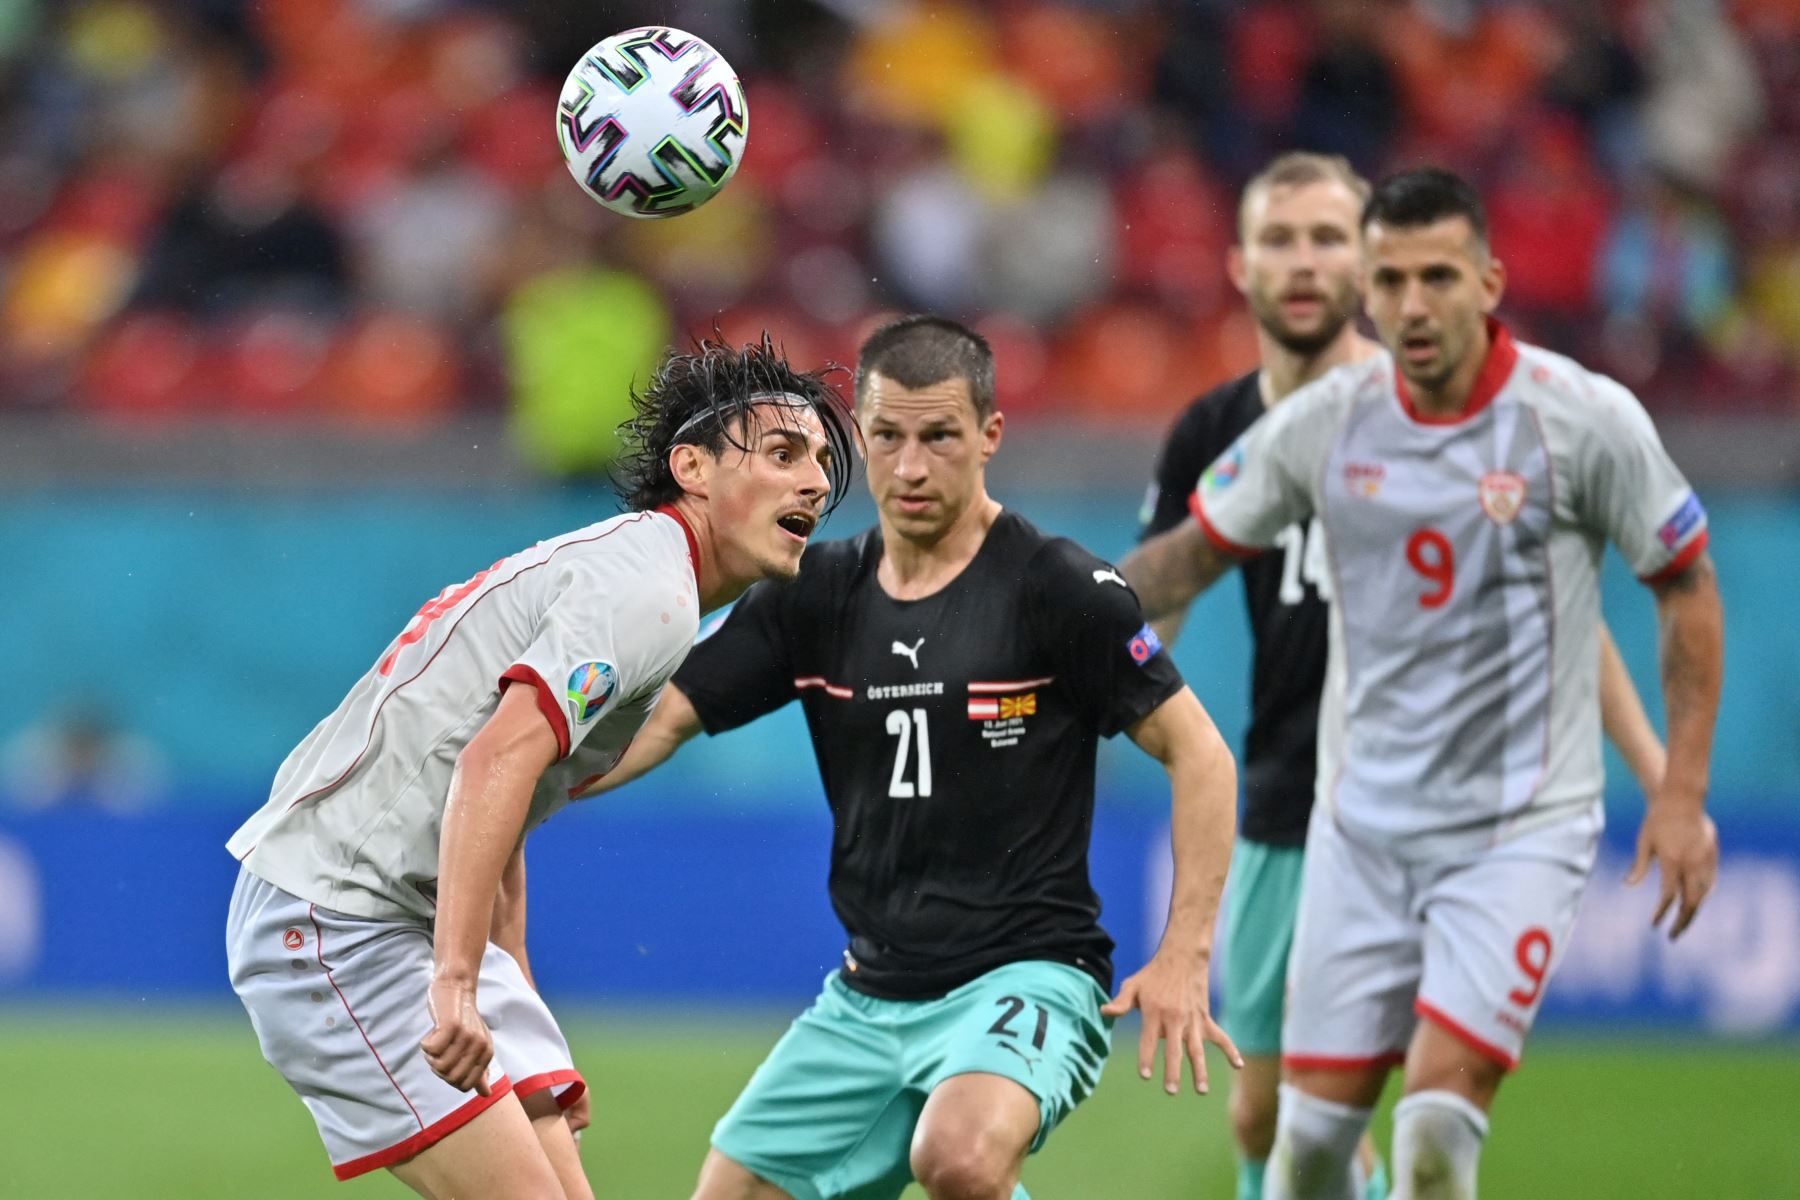 El centrocampista de Macedonia del Norte Eljif Elmas controla el balón durante el partido de fútbol del Grupo C de la UEFA EURO 2020 entre Austria y Macedonia del Norte en el National Arena de Bucarest.
Foto: AFP